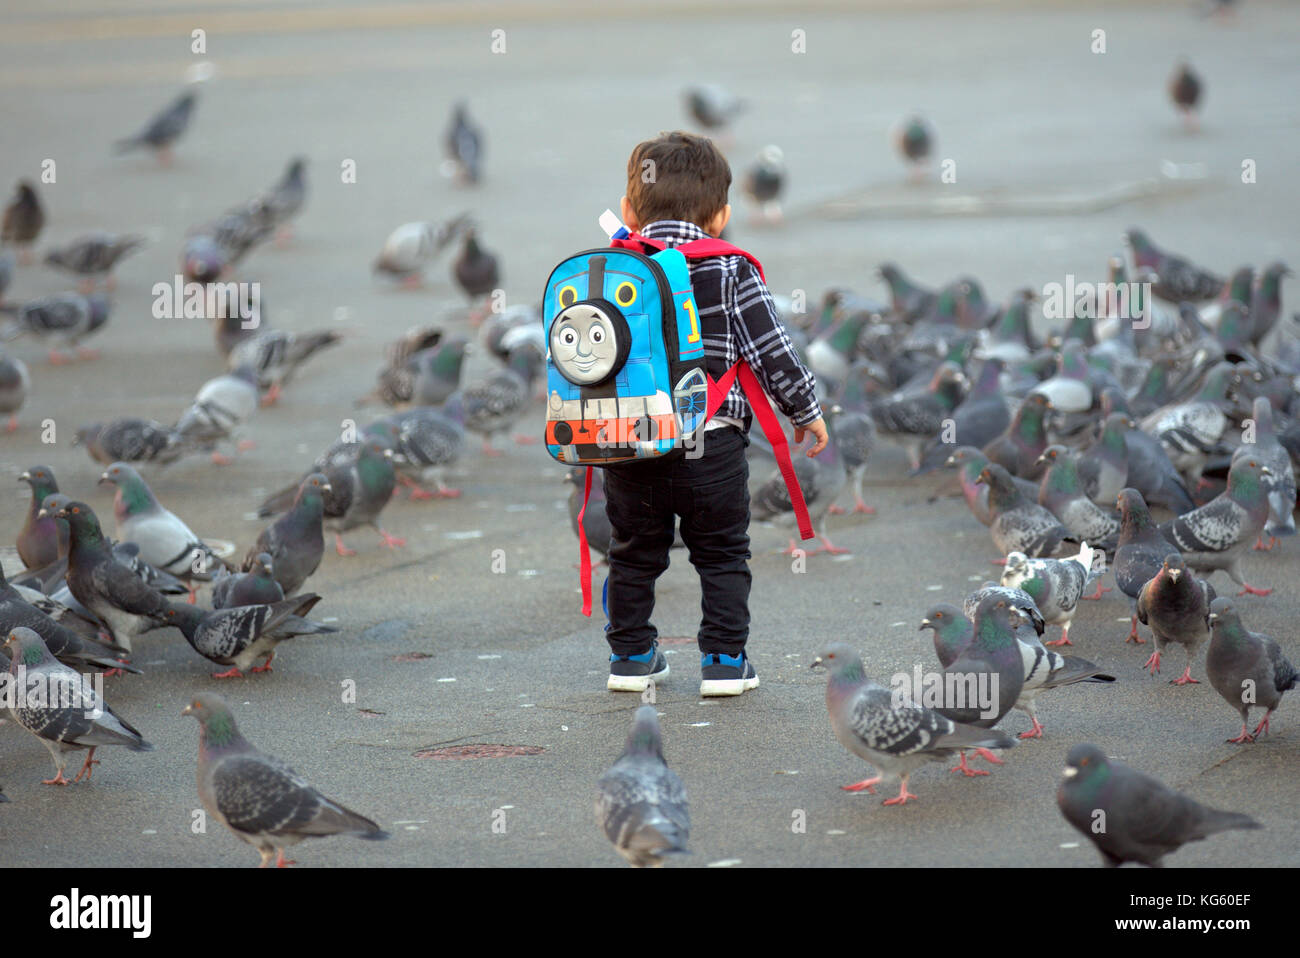 Junge Junge Kind Thomas die Lok Rucksack füttern Tauben von hinten gesehen Stockfoto